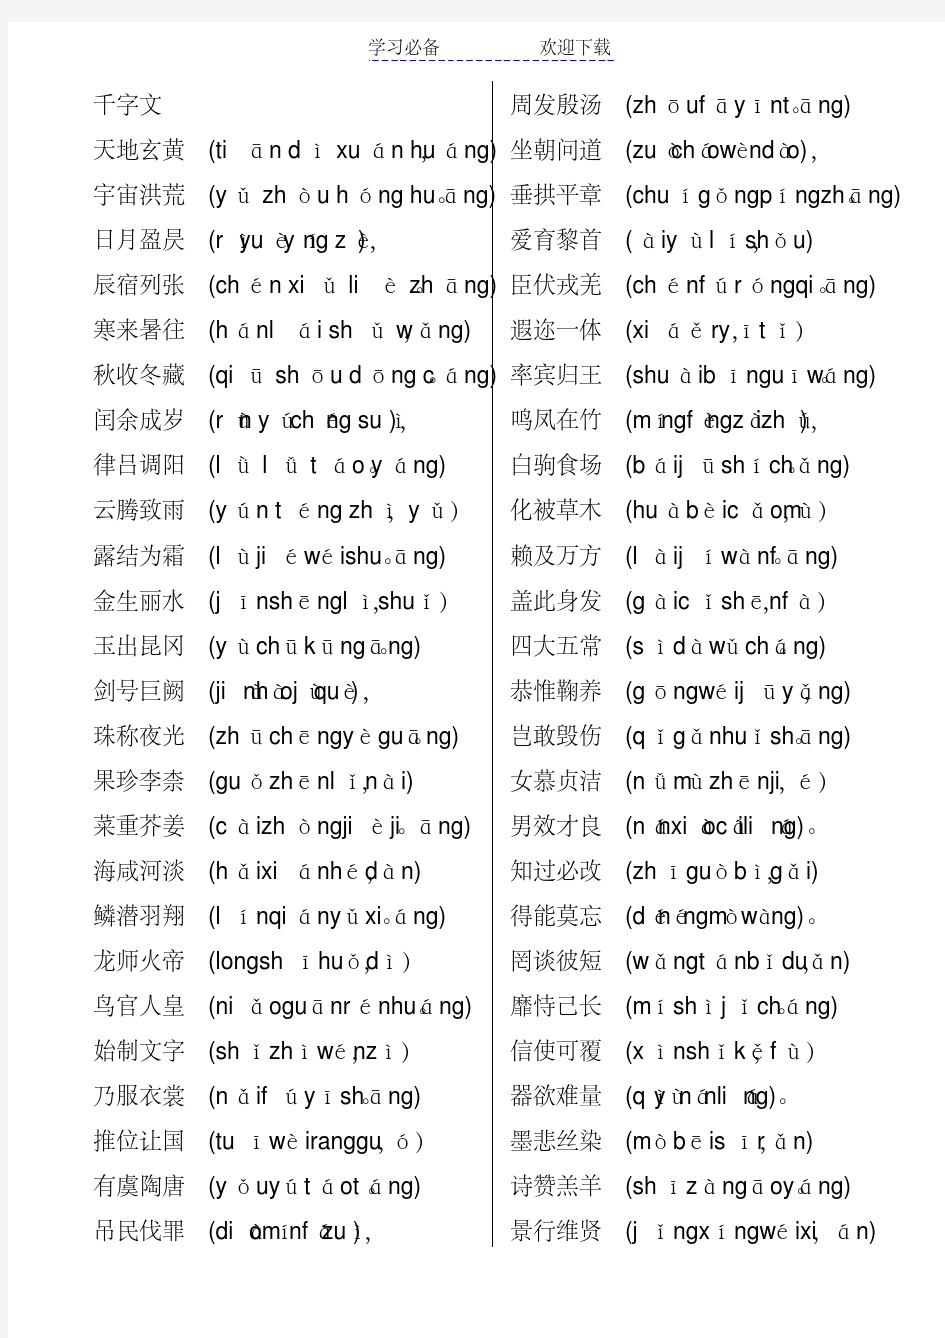 千字文全文带拼音(打印版)